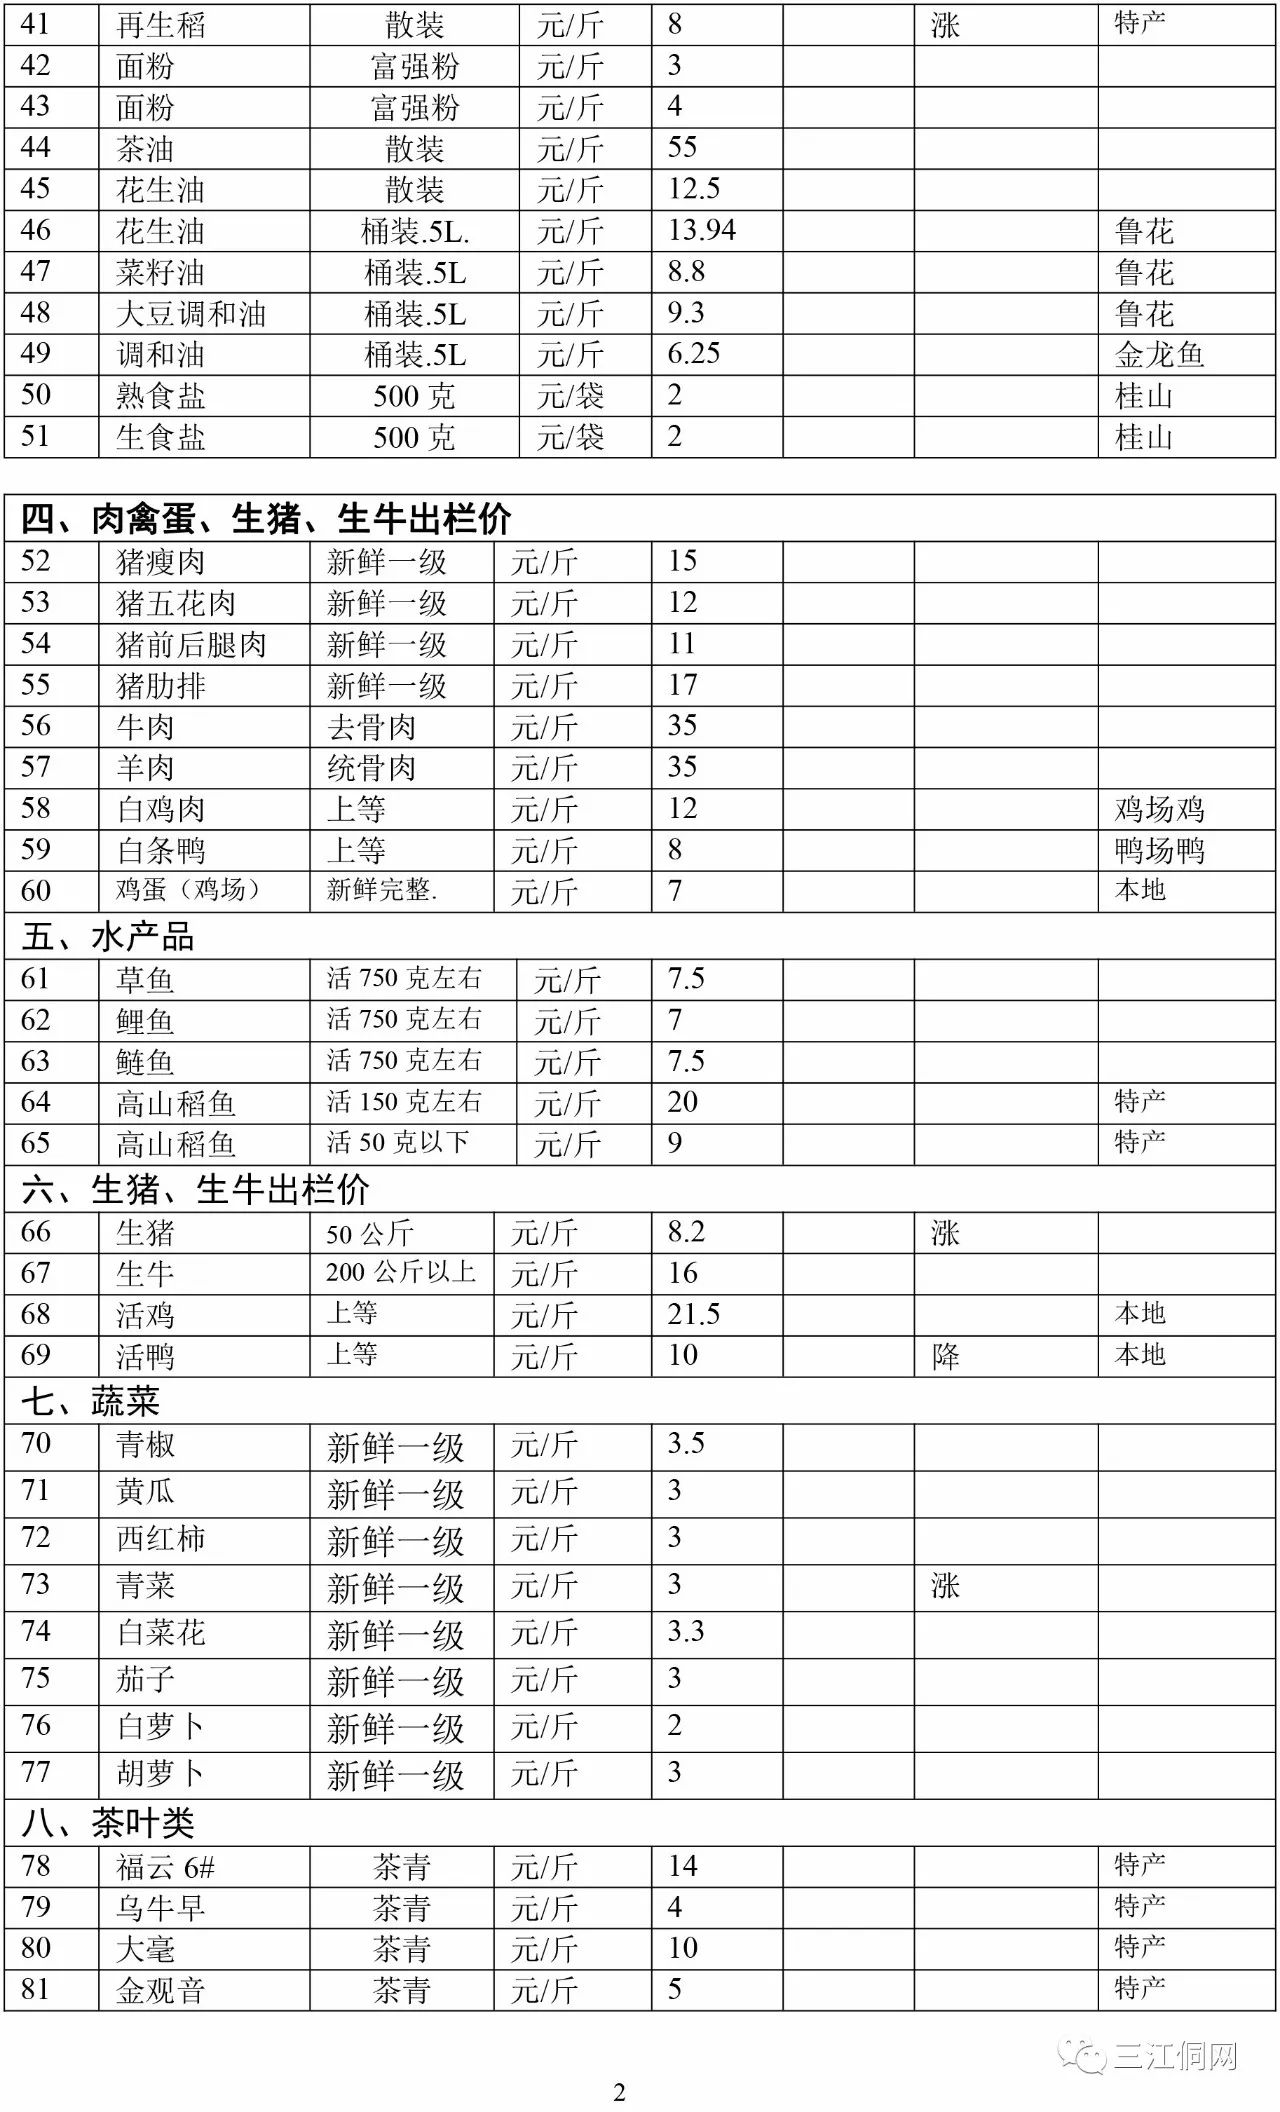 三江物价变化情况统计表(第85期)